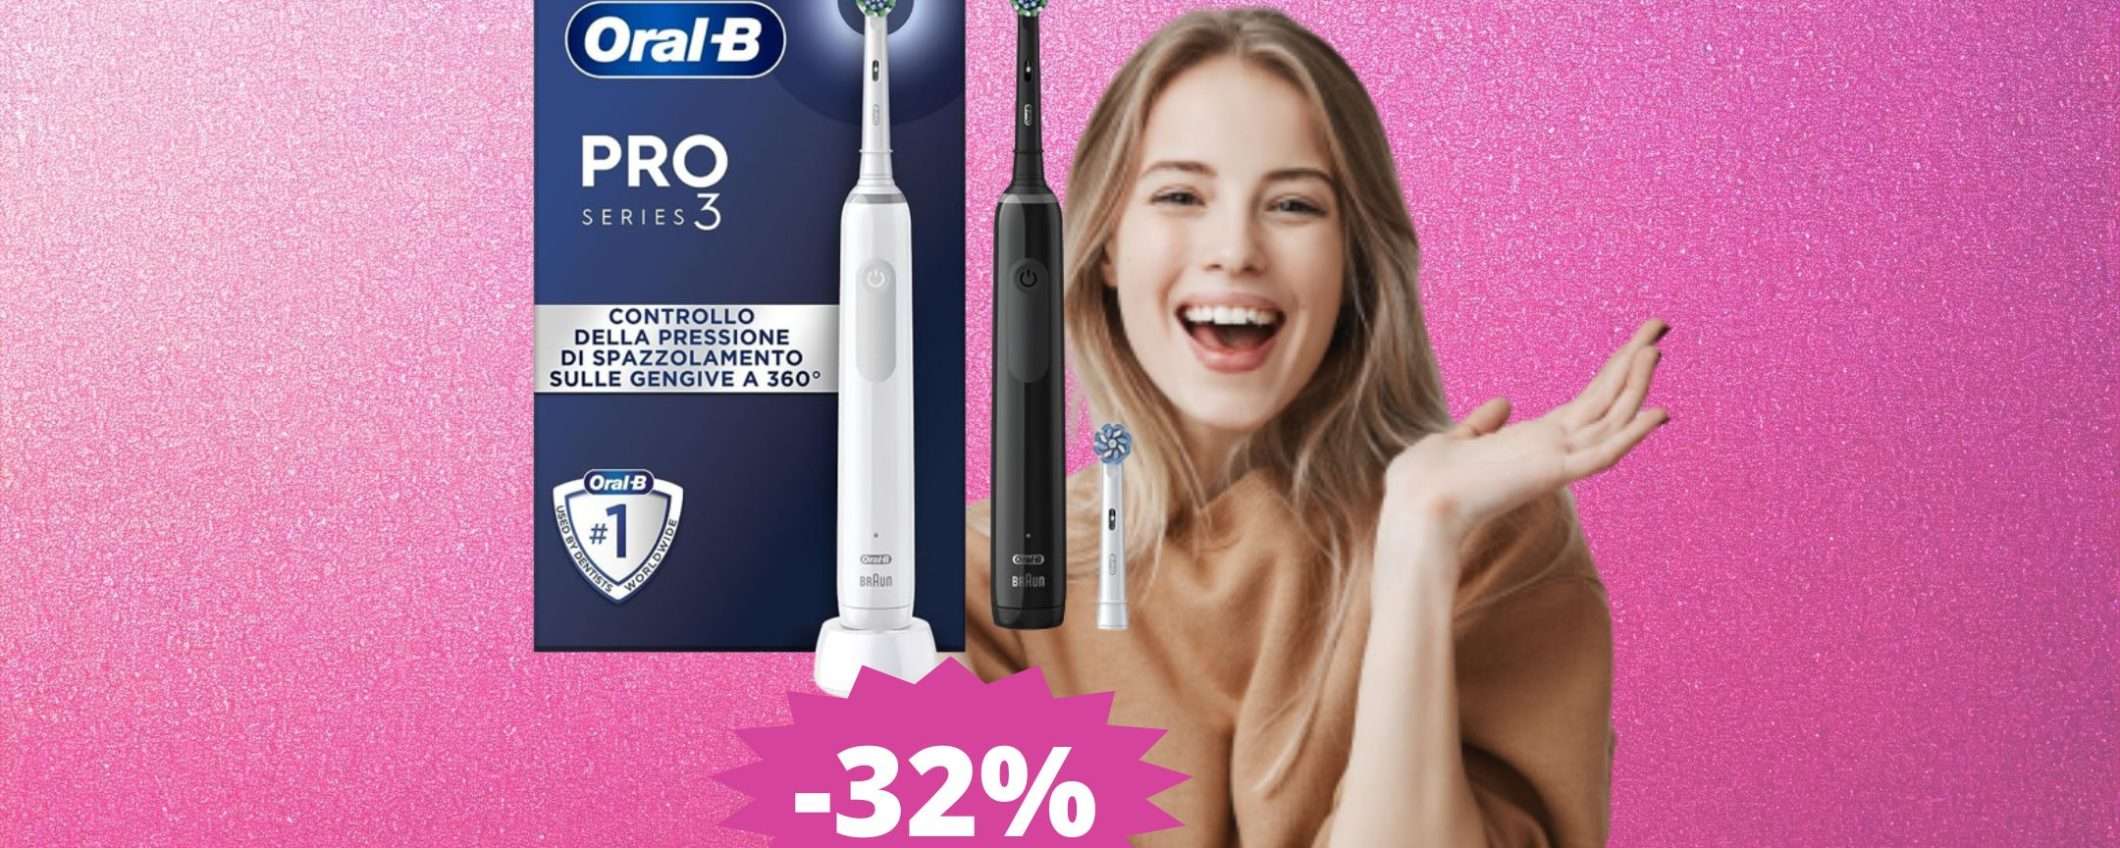 Oral-B Pro 3: SUPER sconto del 32% su Amazon